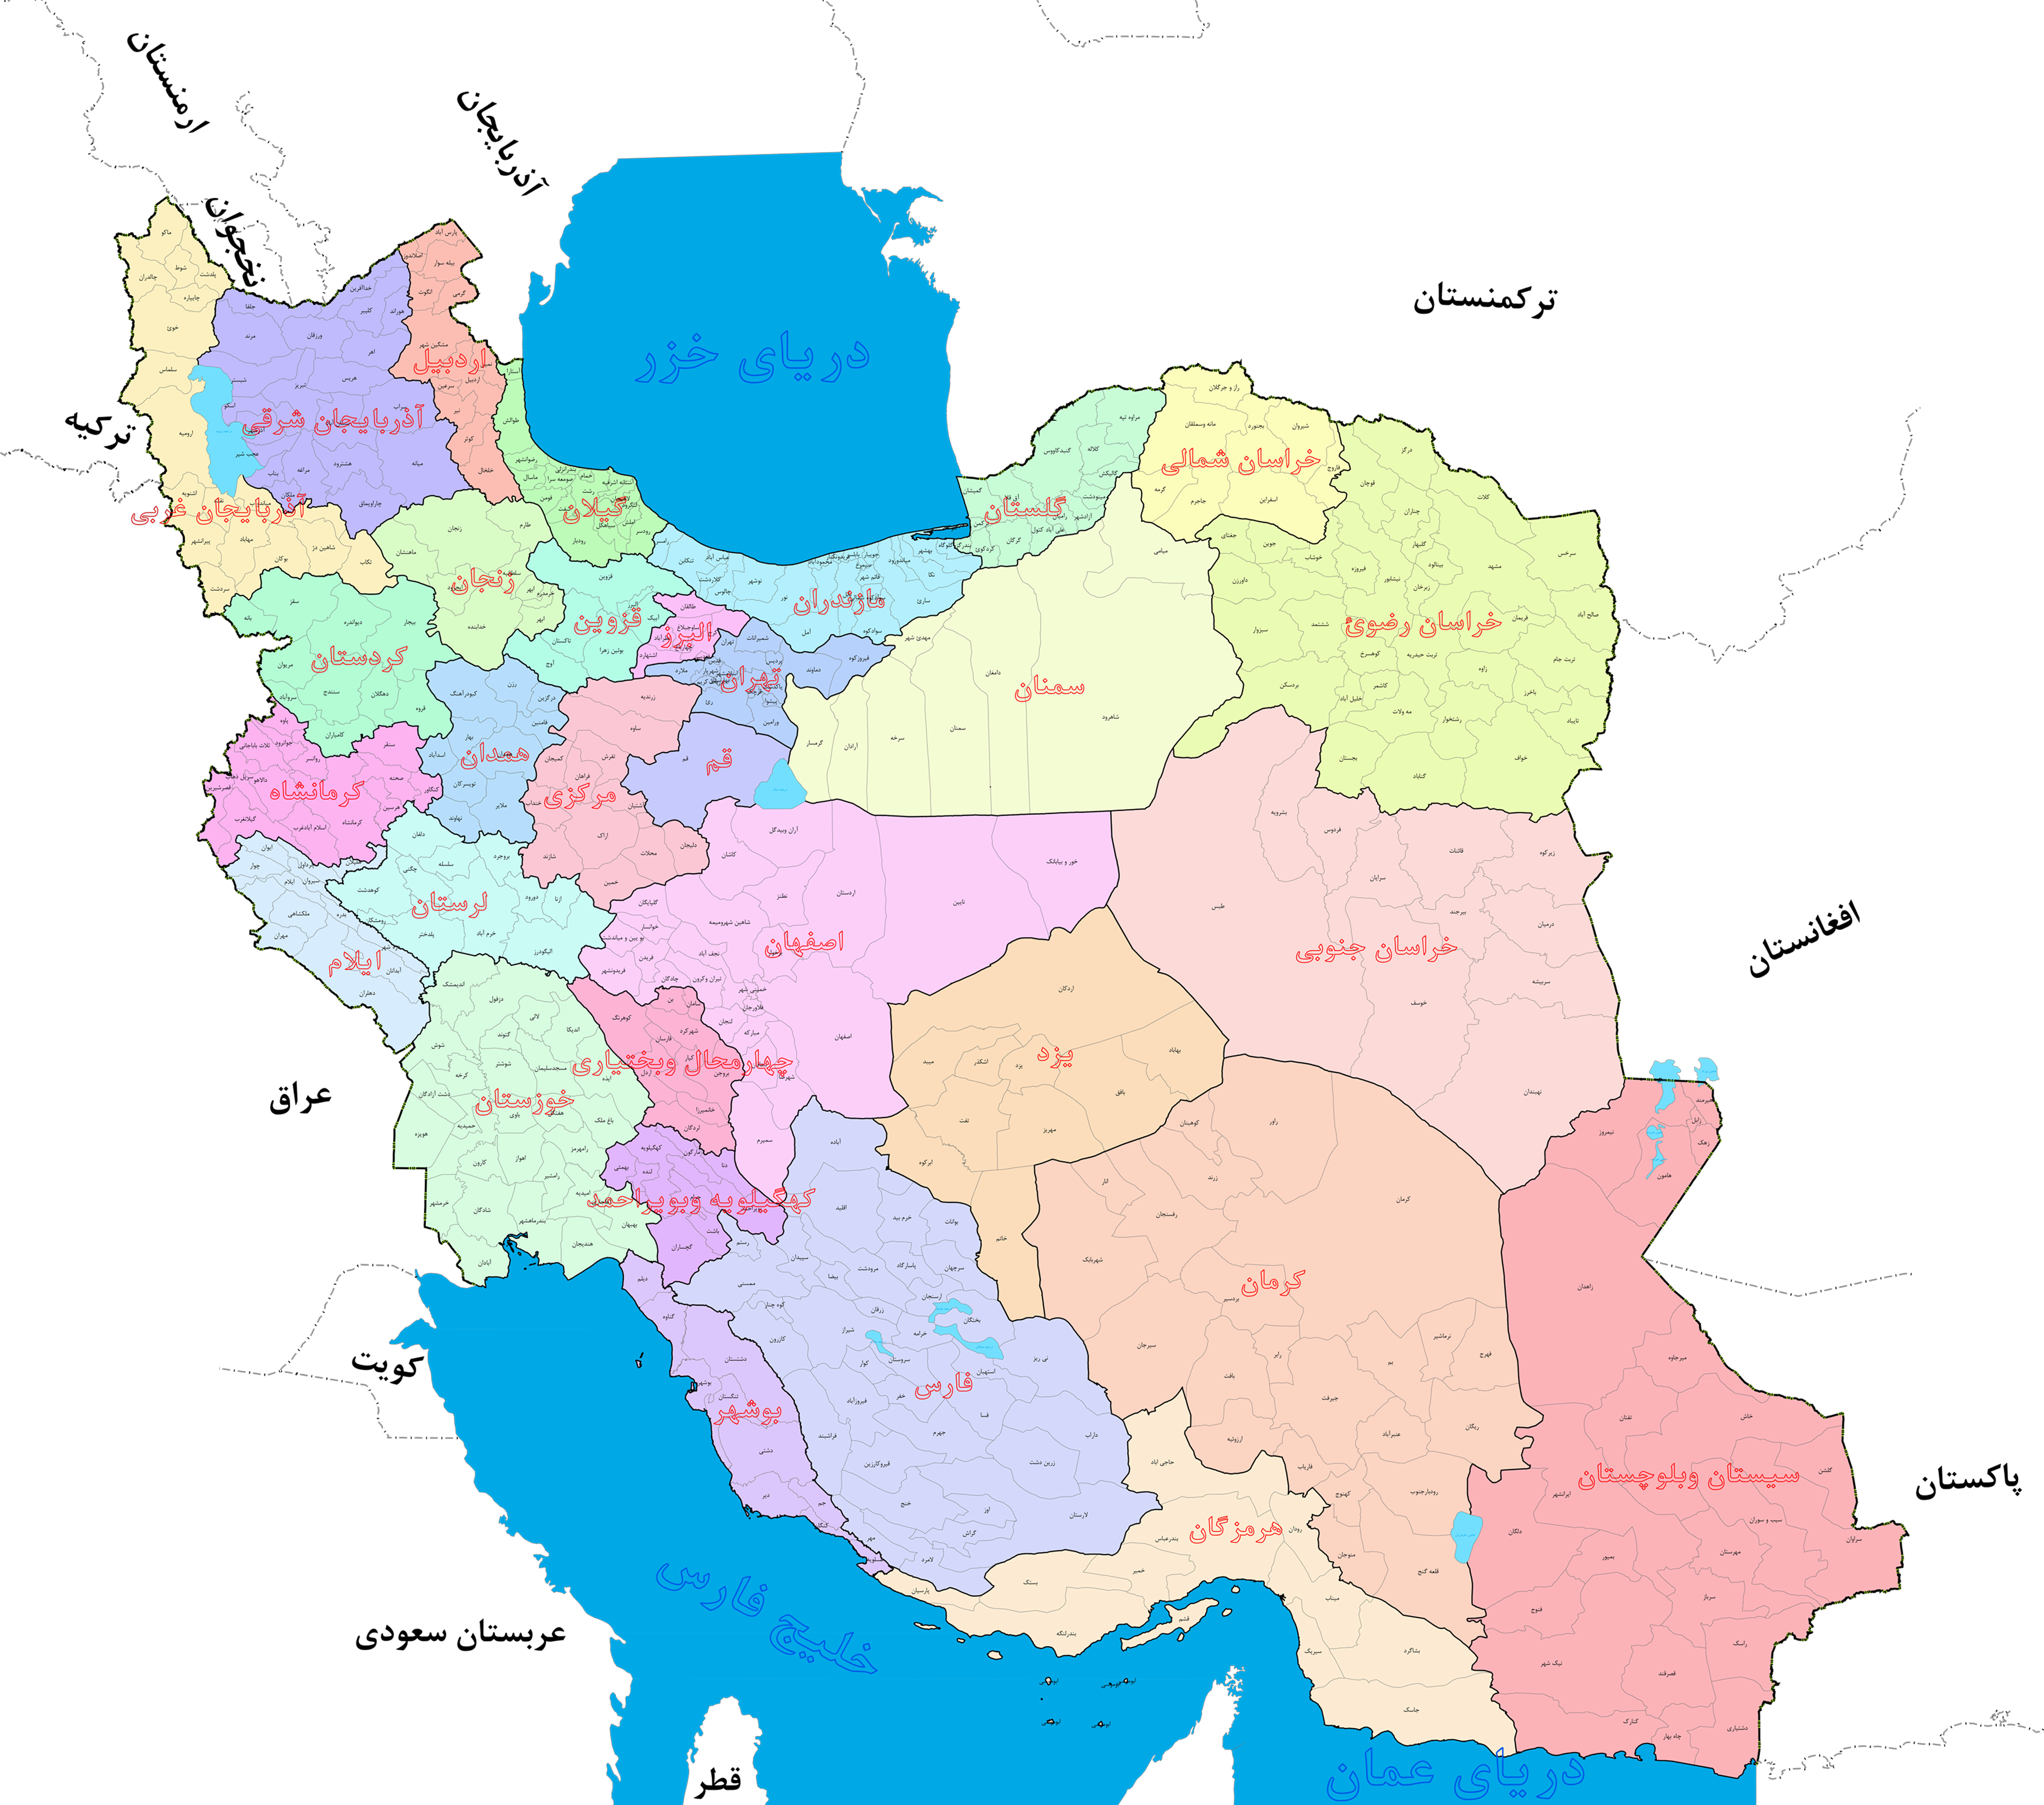  دانلود رایگان بهترین نقشه استانها ، شهرستانها و دهستانهای کشور ایران با کیفیت فوق العاده بالا  